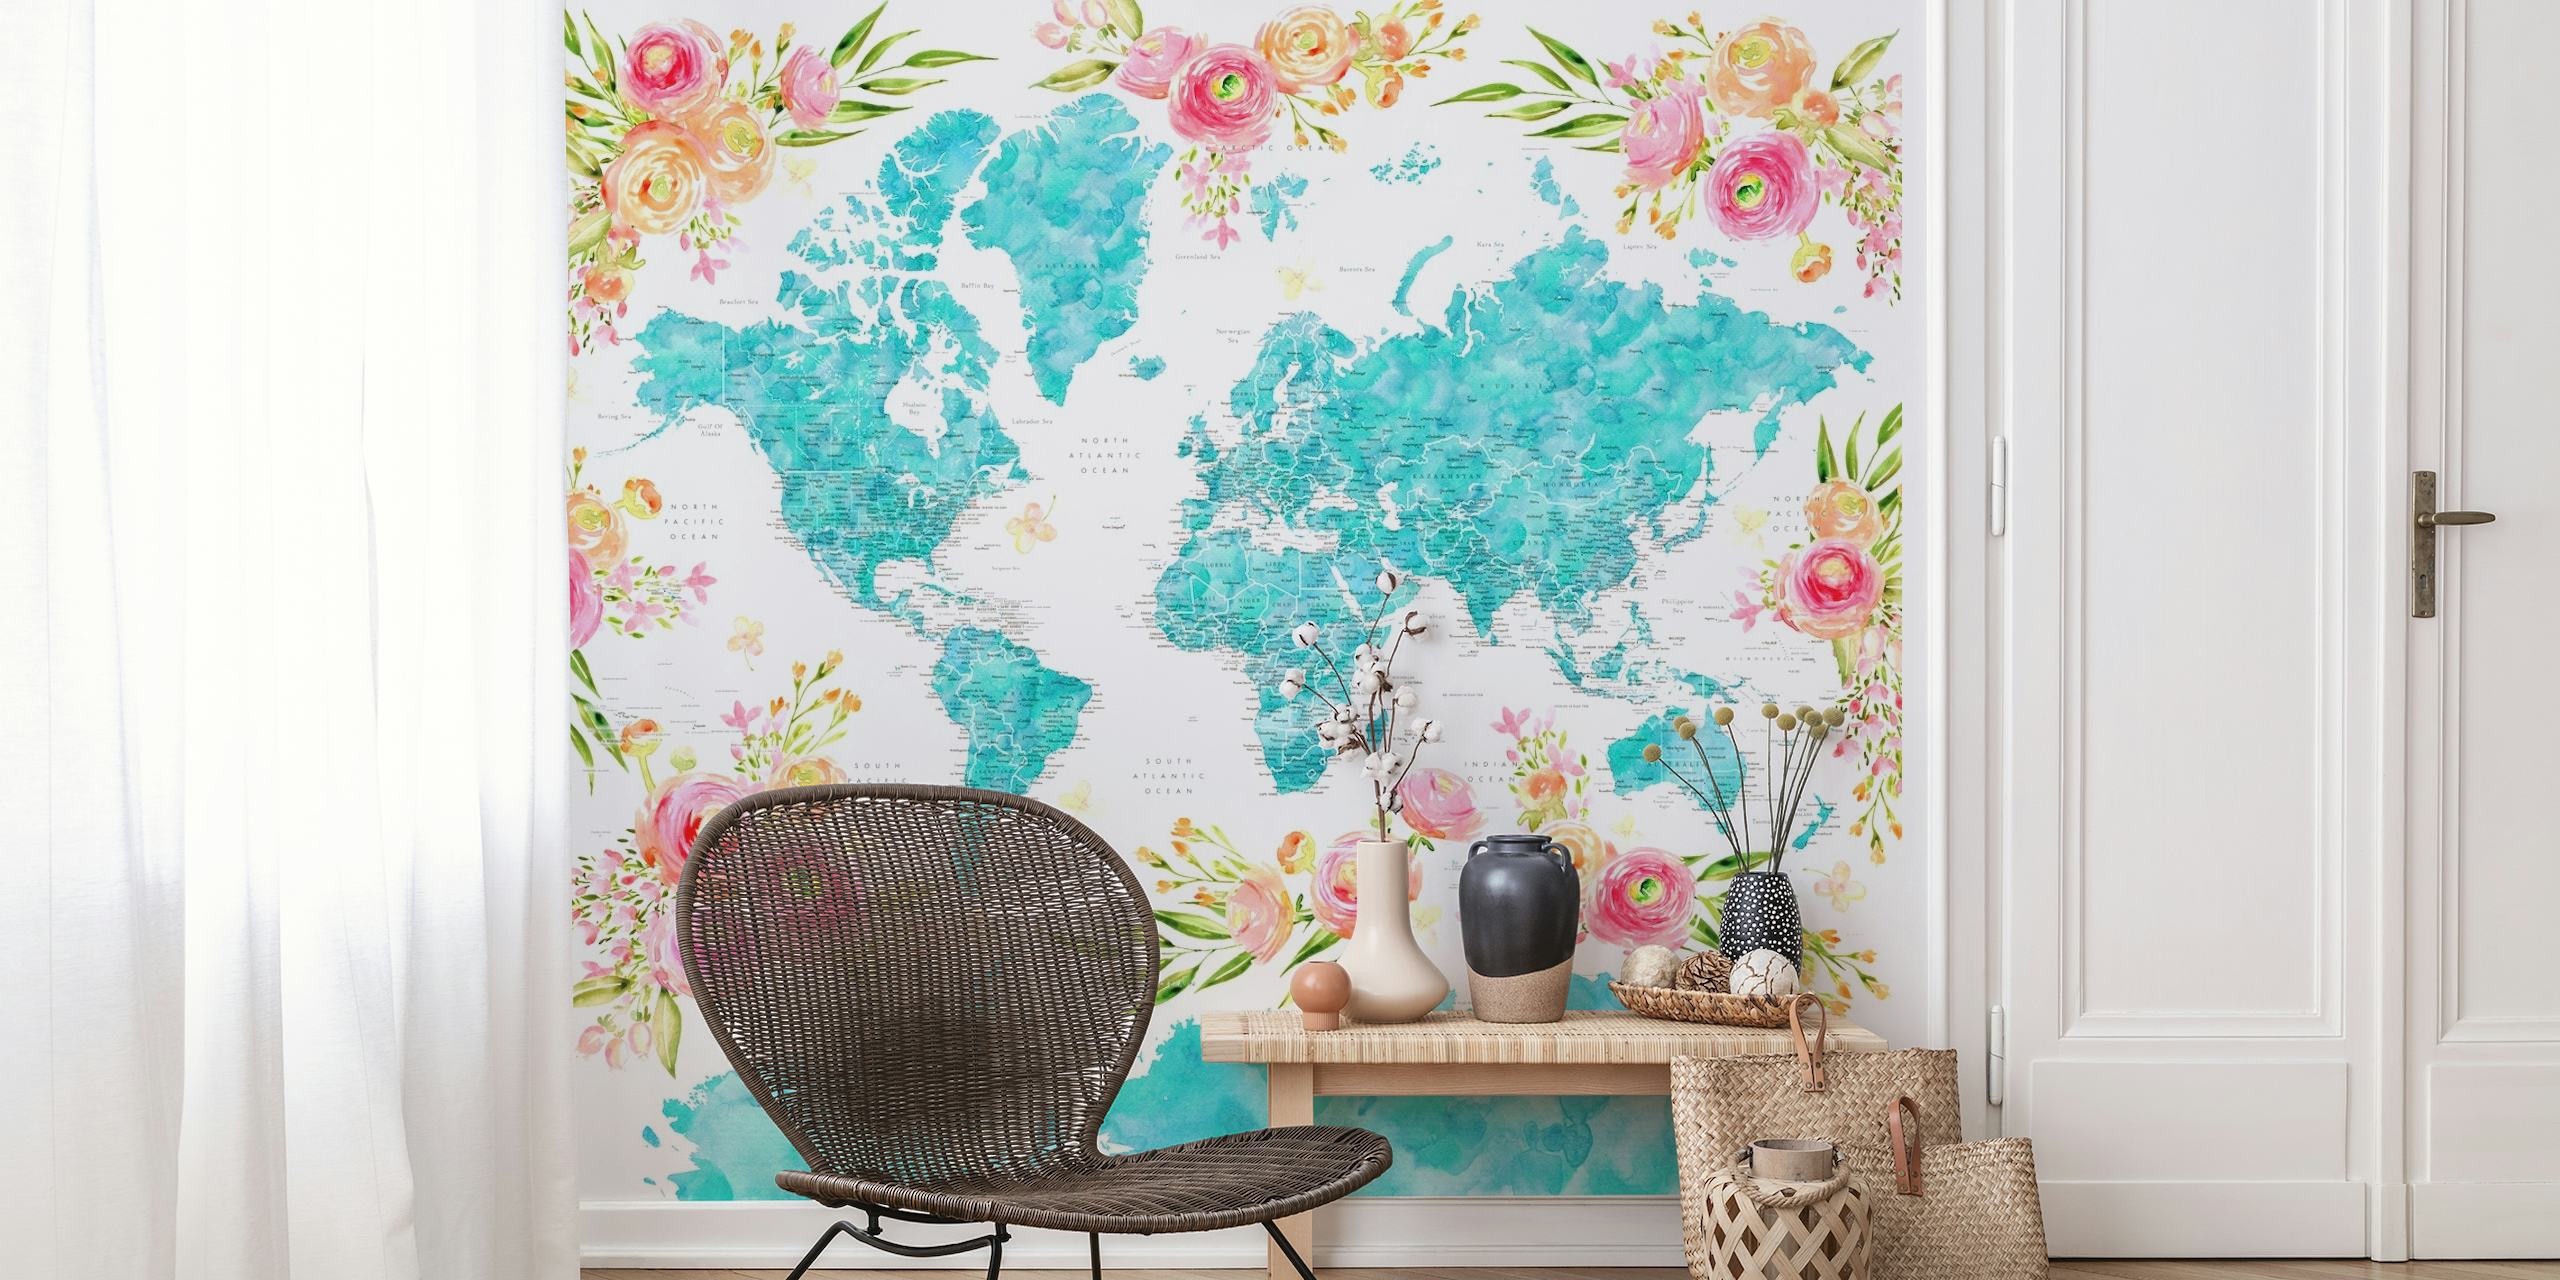 Kolorowa fototapeta z mapą świata z kwiatowymi wzorami zdobiącymi kontynenty